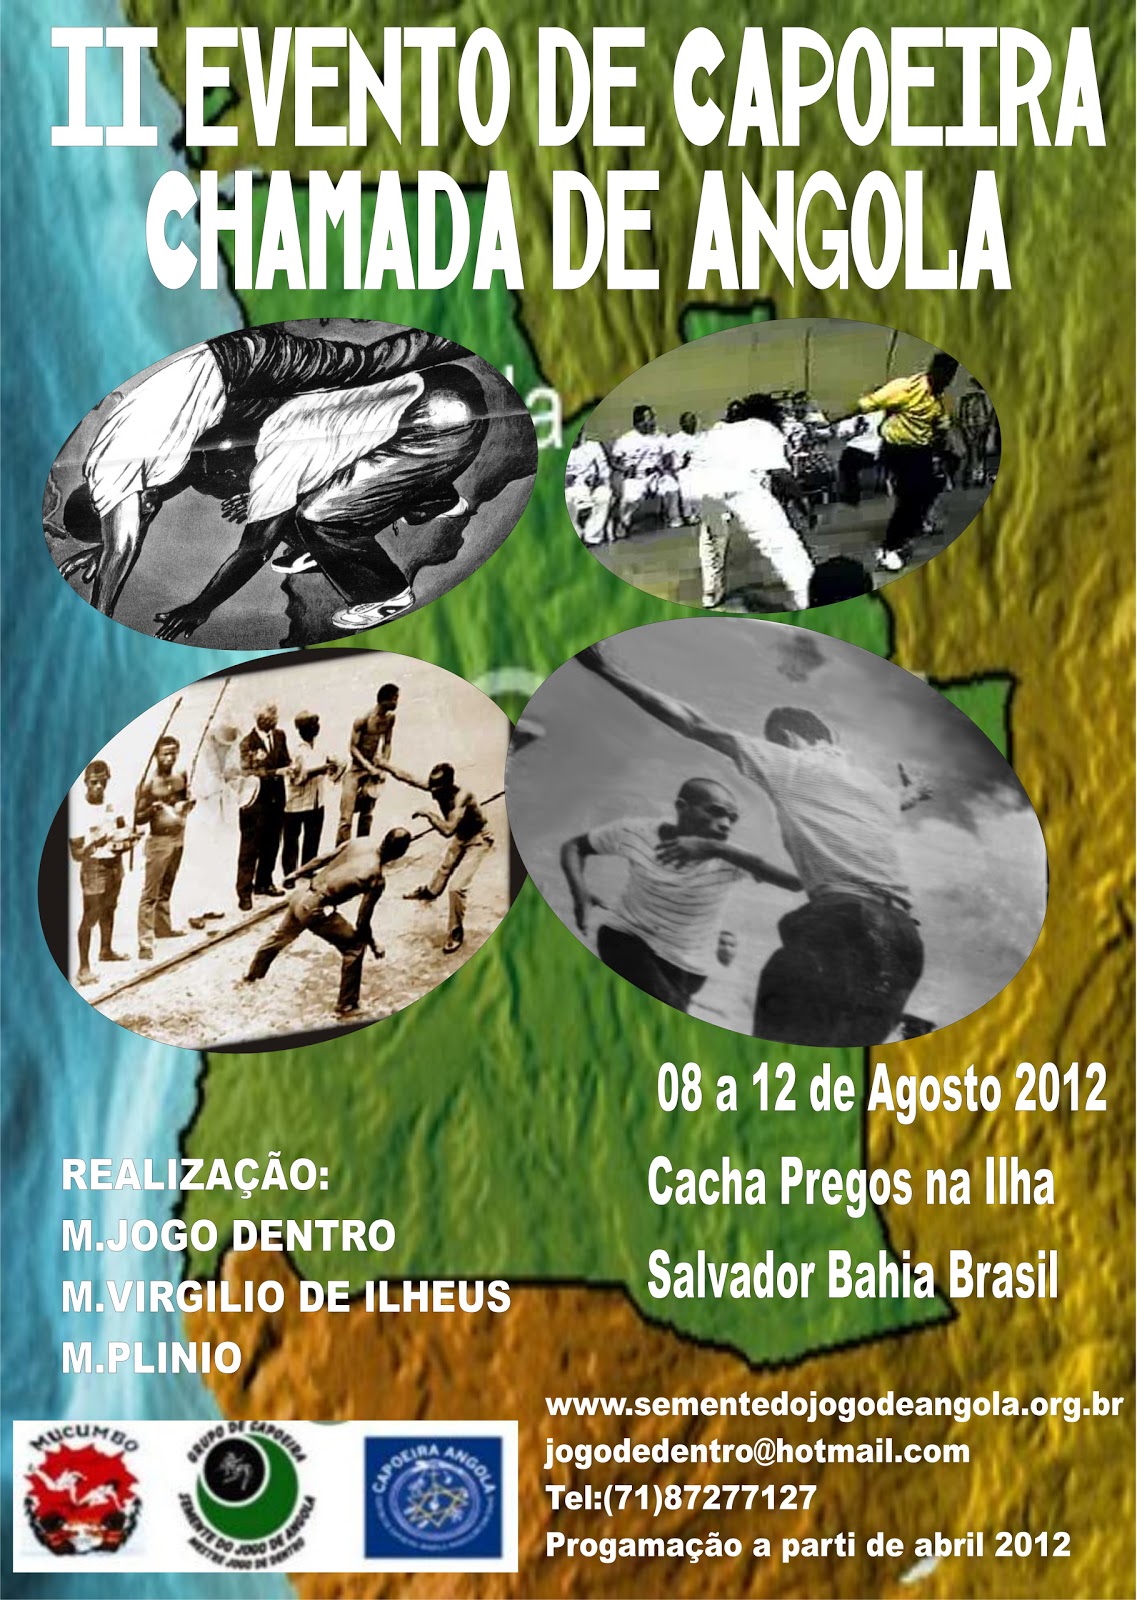 Semente do Jogo de Angola: Chamada de Angola 2012